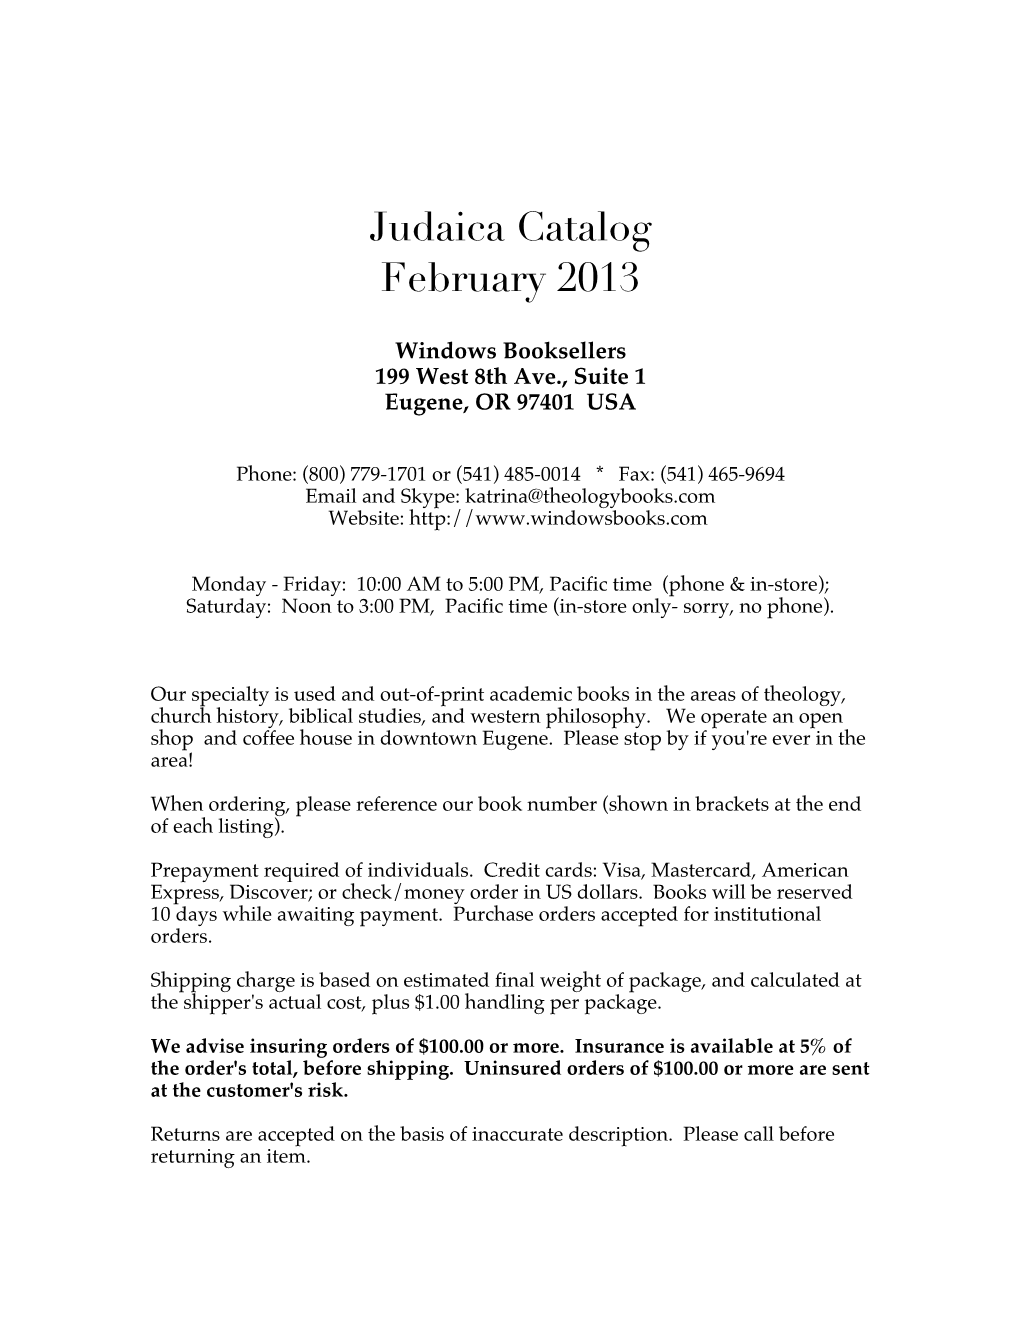 Judaica Catalog February 2013